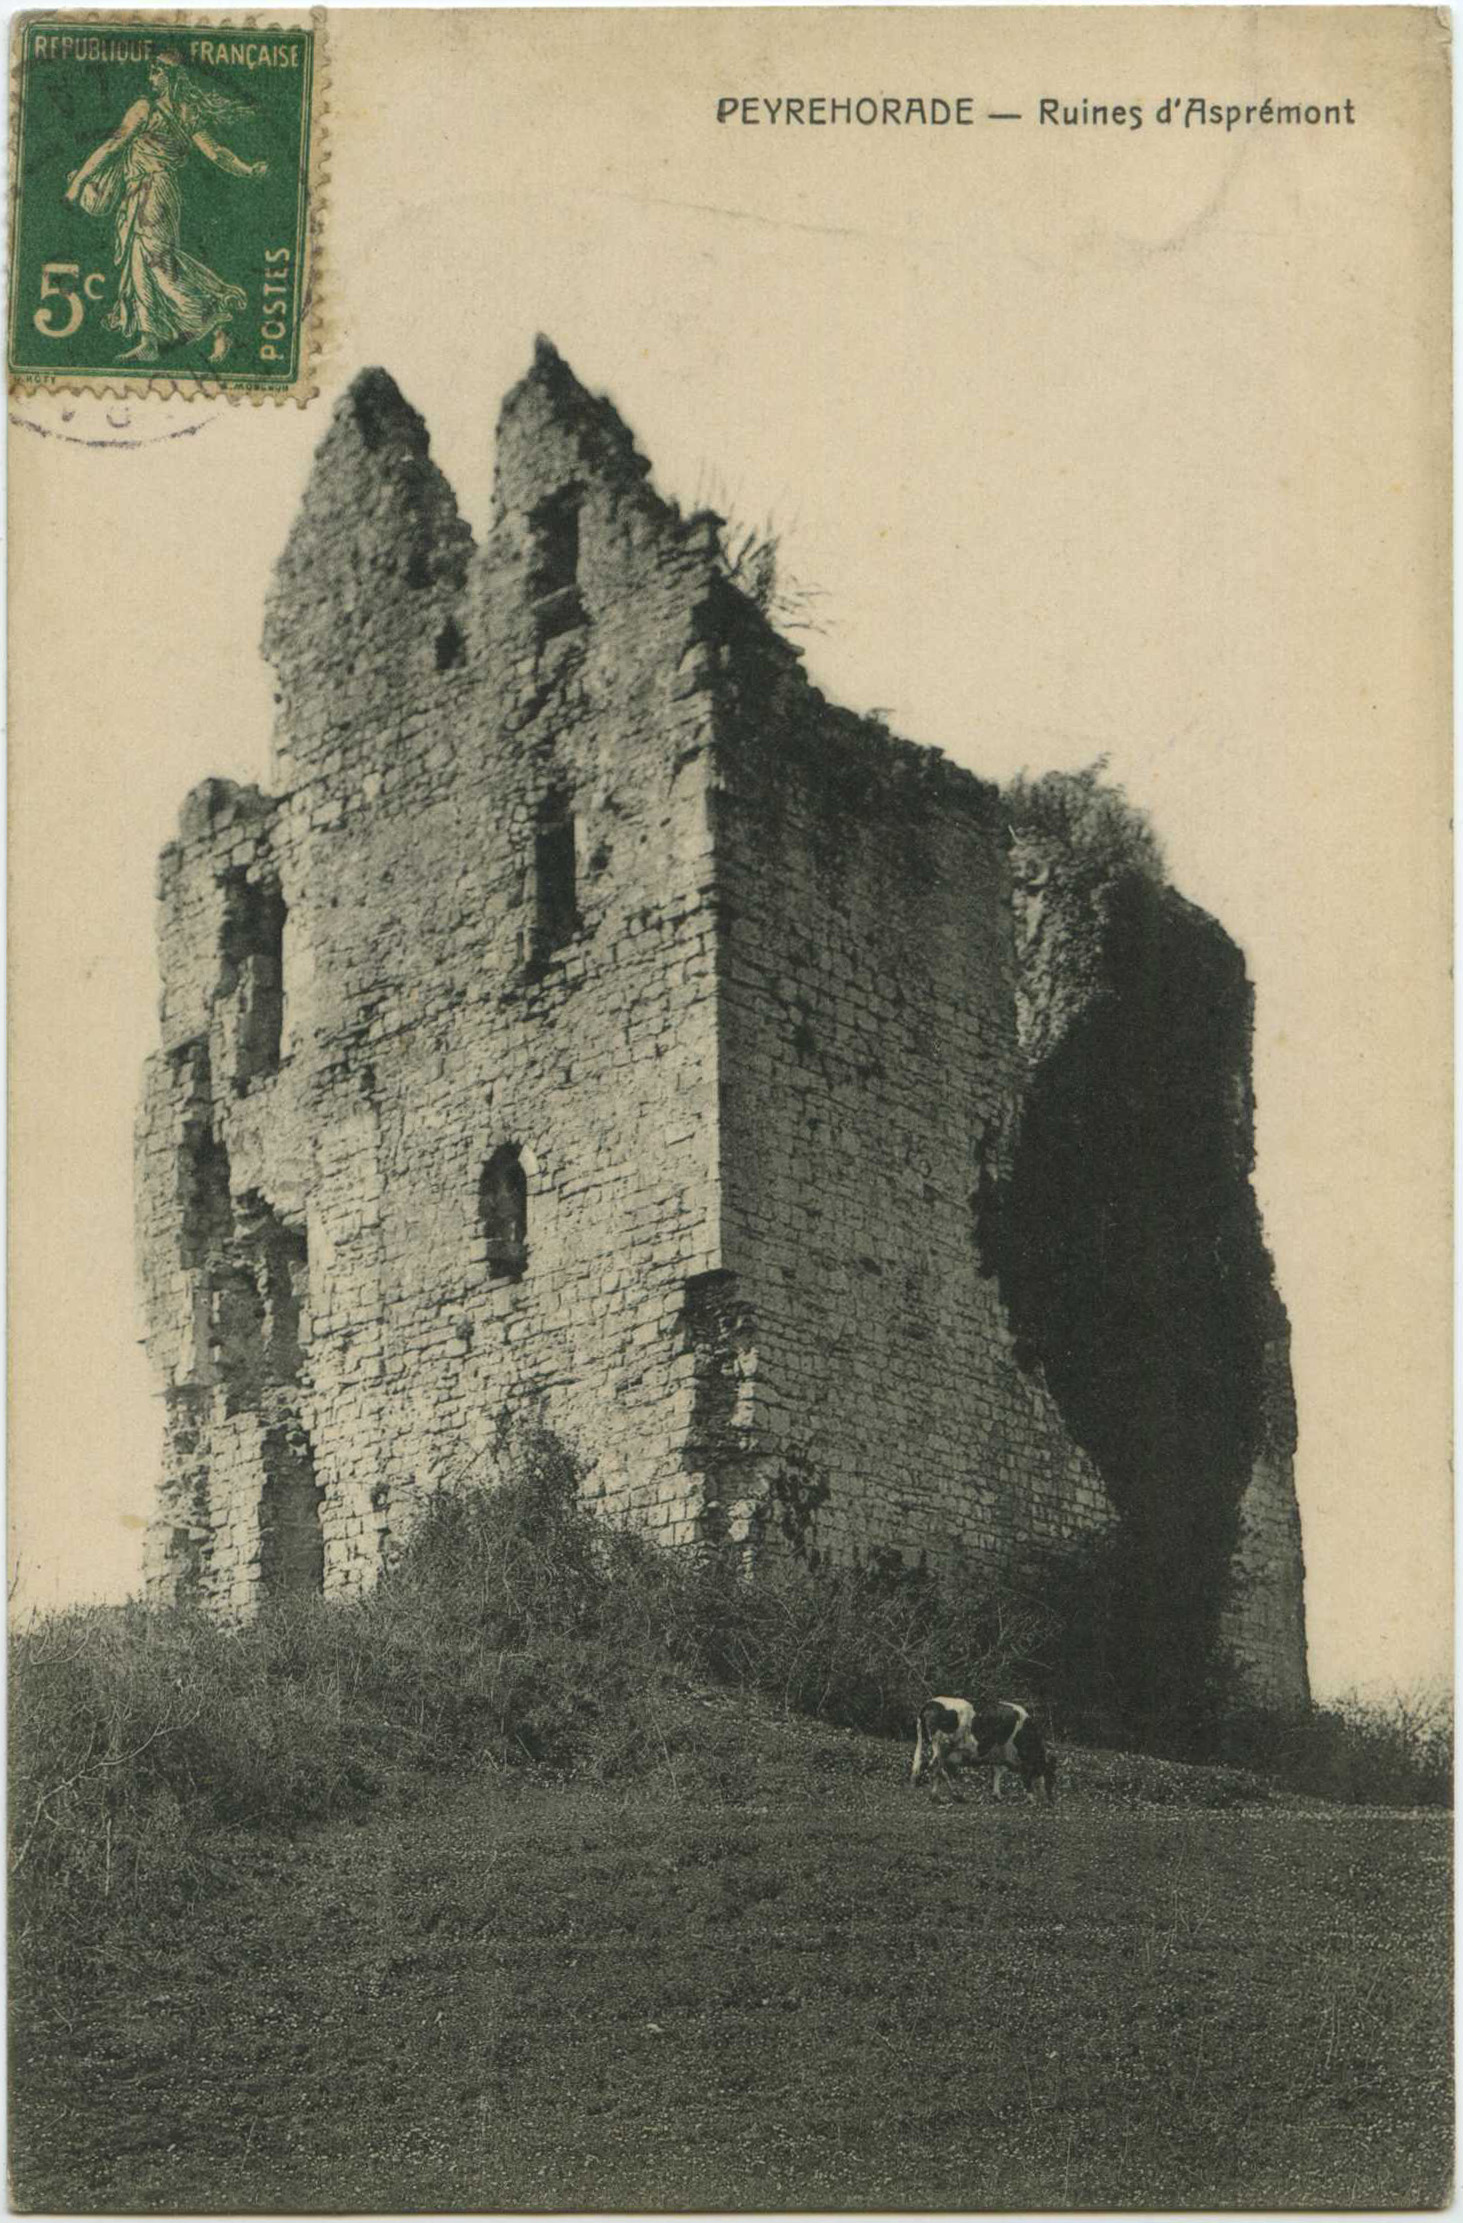 Peyrehorade - Ruines d'Asprémont